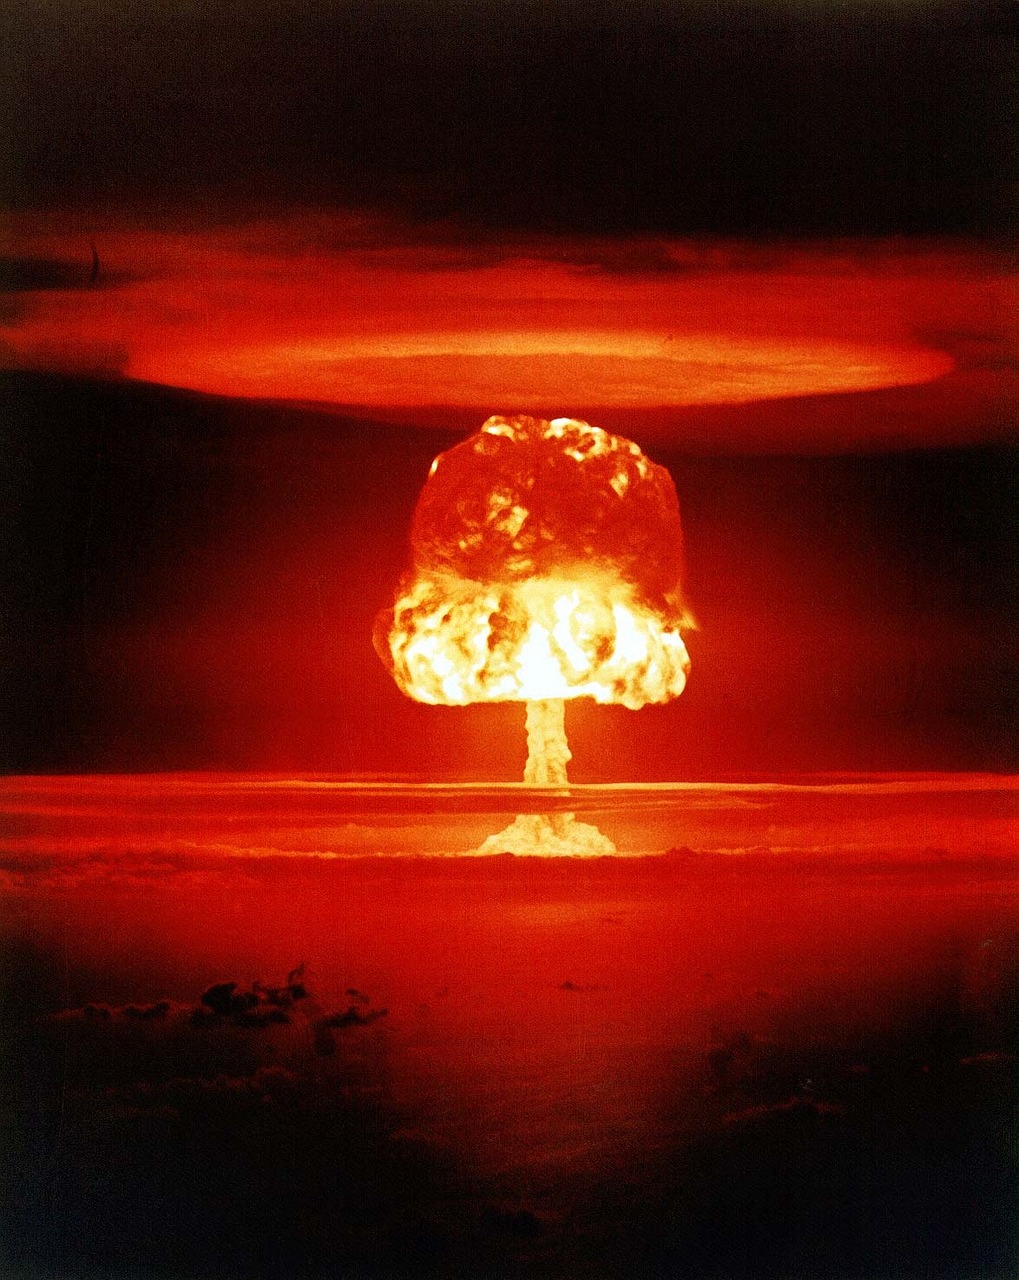 Atominė Bomba, Grybų Debesys, Sprogimas, Masinio Naikinimo Ginklai, Sunaikinimas, Masinis Naikinimas, Ginklas, Branduolinis Sprogimas, Armagedonas, Pasaulinis Karas